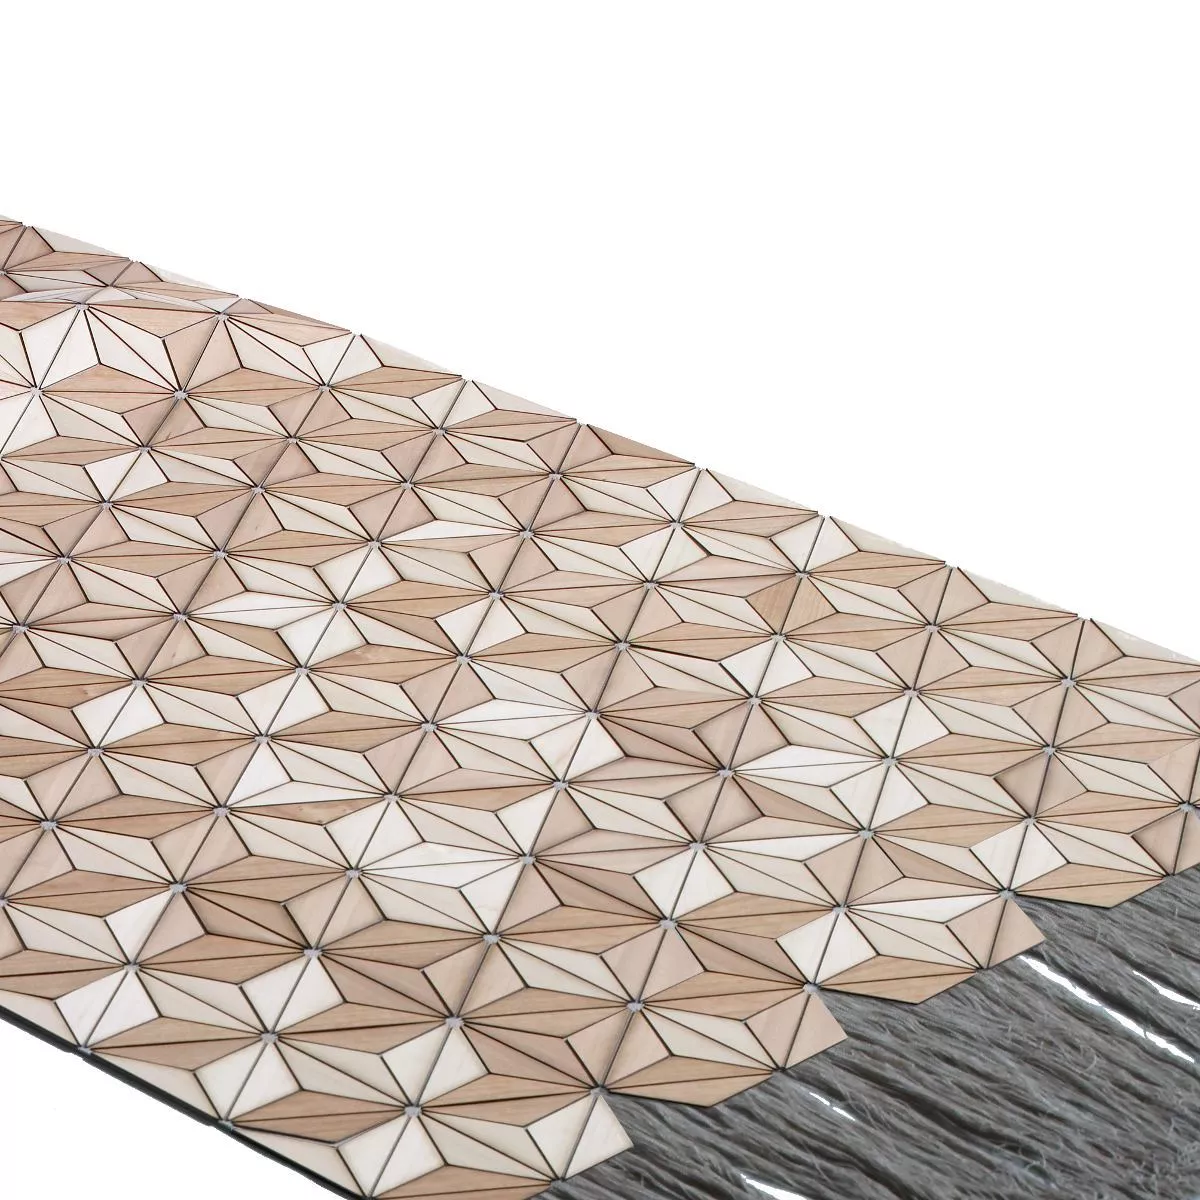 Designer-Teppich "Ashdown" aus Holz und Leinen